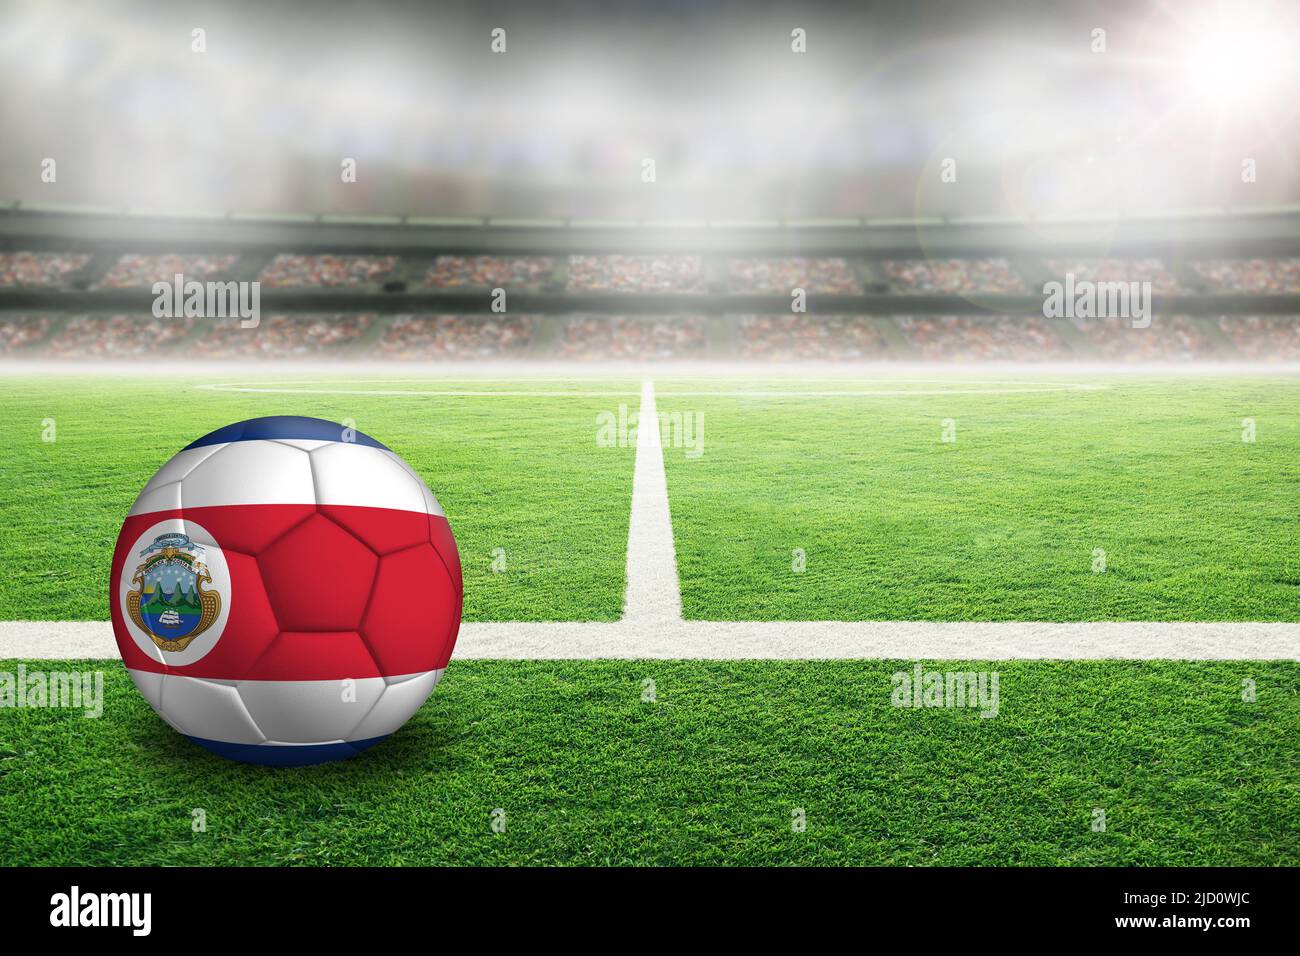 Fútbol de Costa Rica en un estadio al aire libre con mucha luz y bandera costarricense pintada. Concéntrate en el primer plano y en el balón de fútbol con poca profundidad de campo Foto de stock